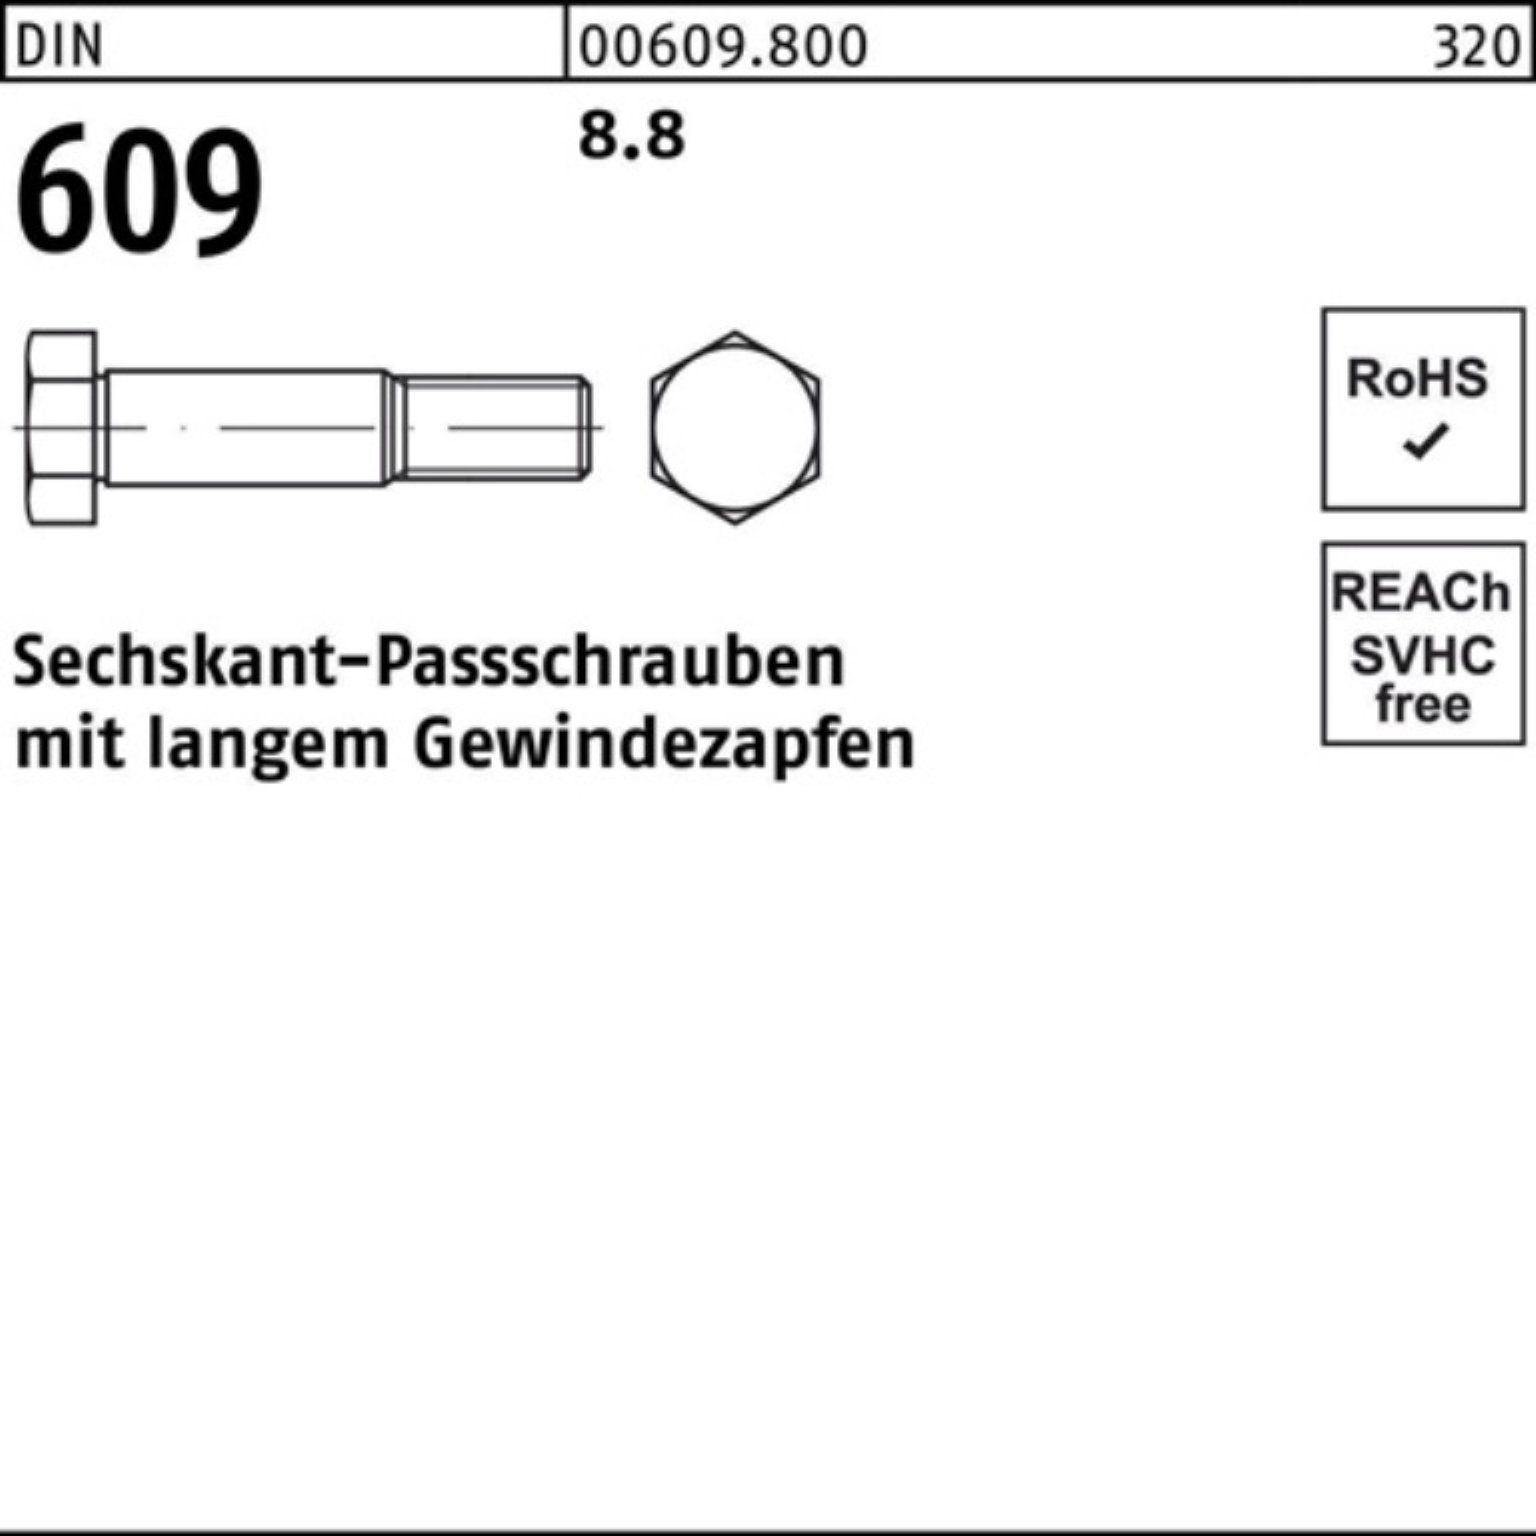 Reyher Schraube 609 100 Sechskantpassschraube Gewindezapfen 100er M10x DIN Pack langem